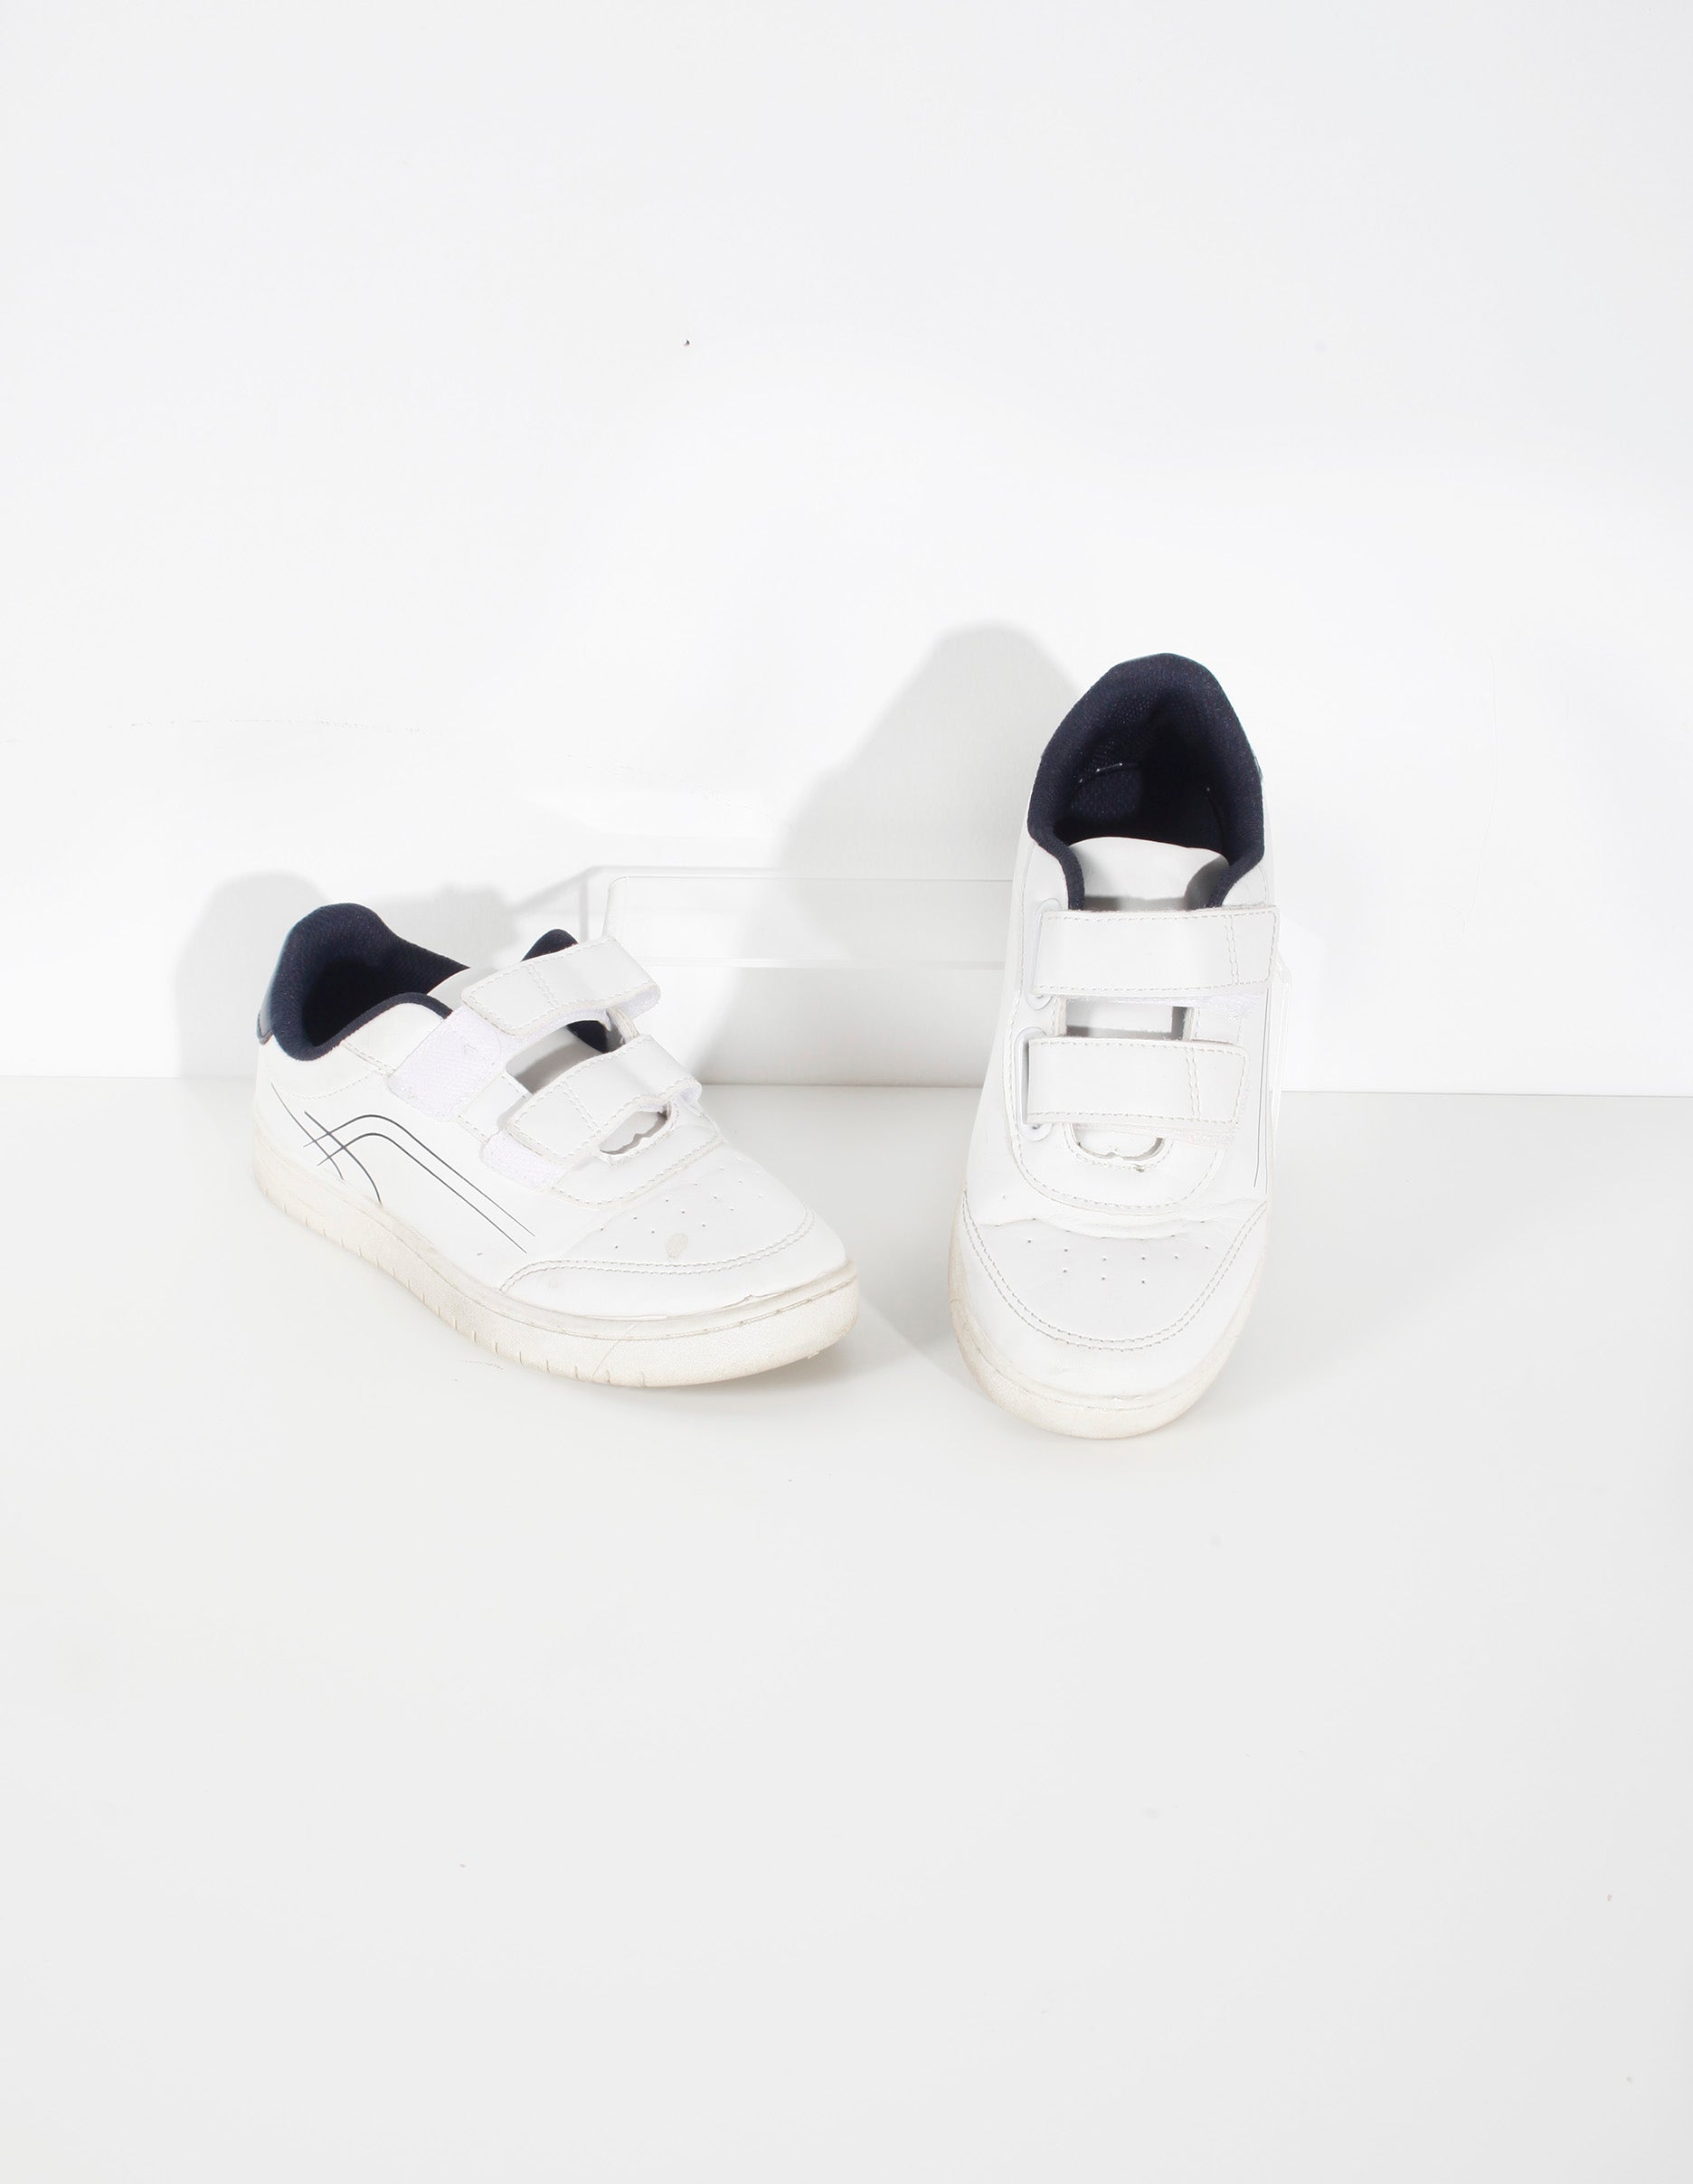 Kids White sneakers (Eu34)